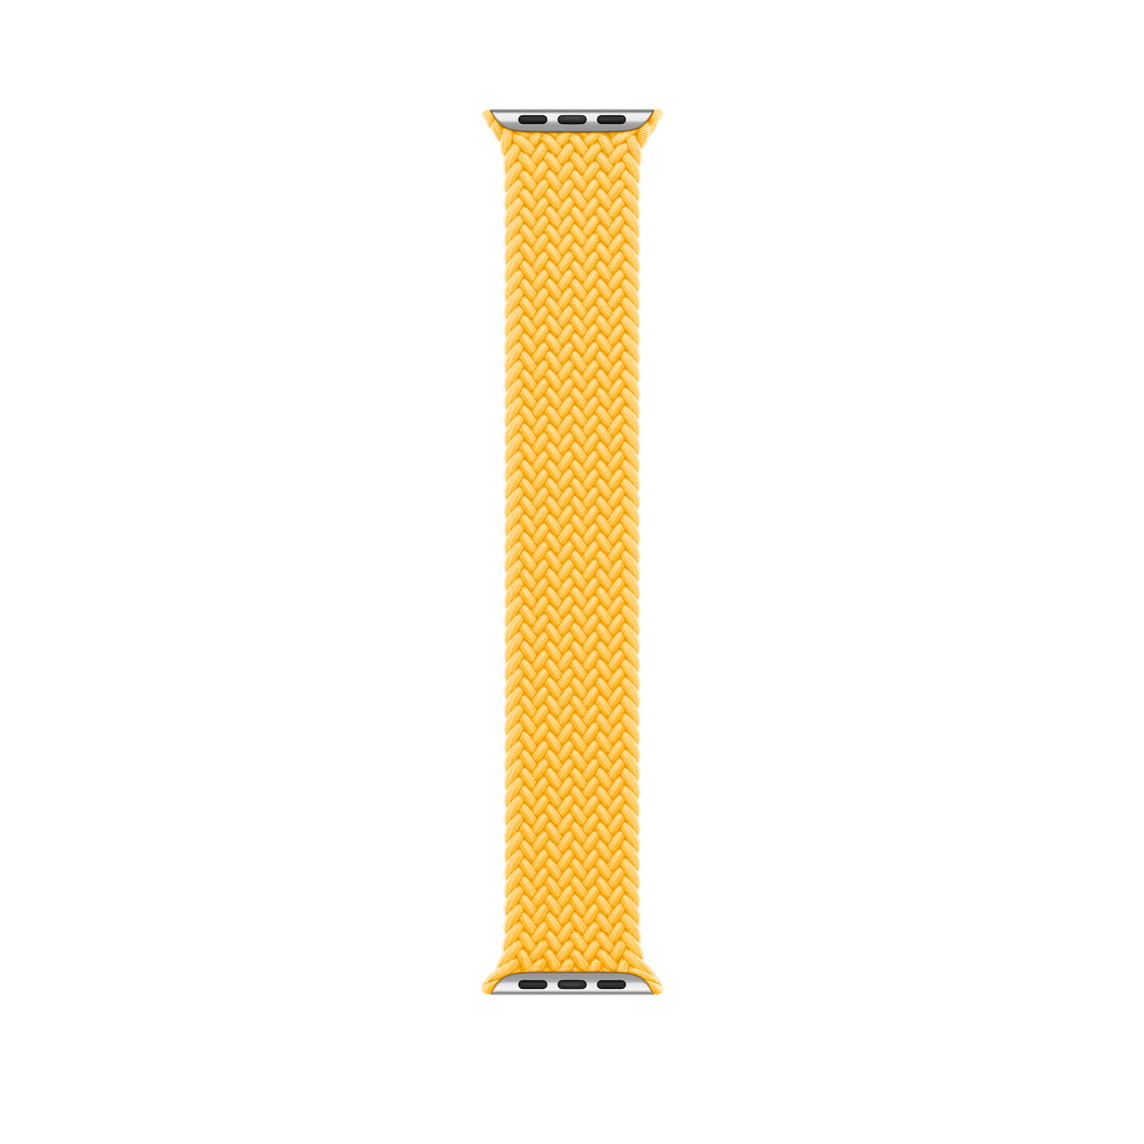 Correa Solo Loop trenzada amarillo solar de poliéster trenzado con hilos de silicona sin cierres ni hebillas